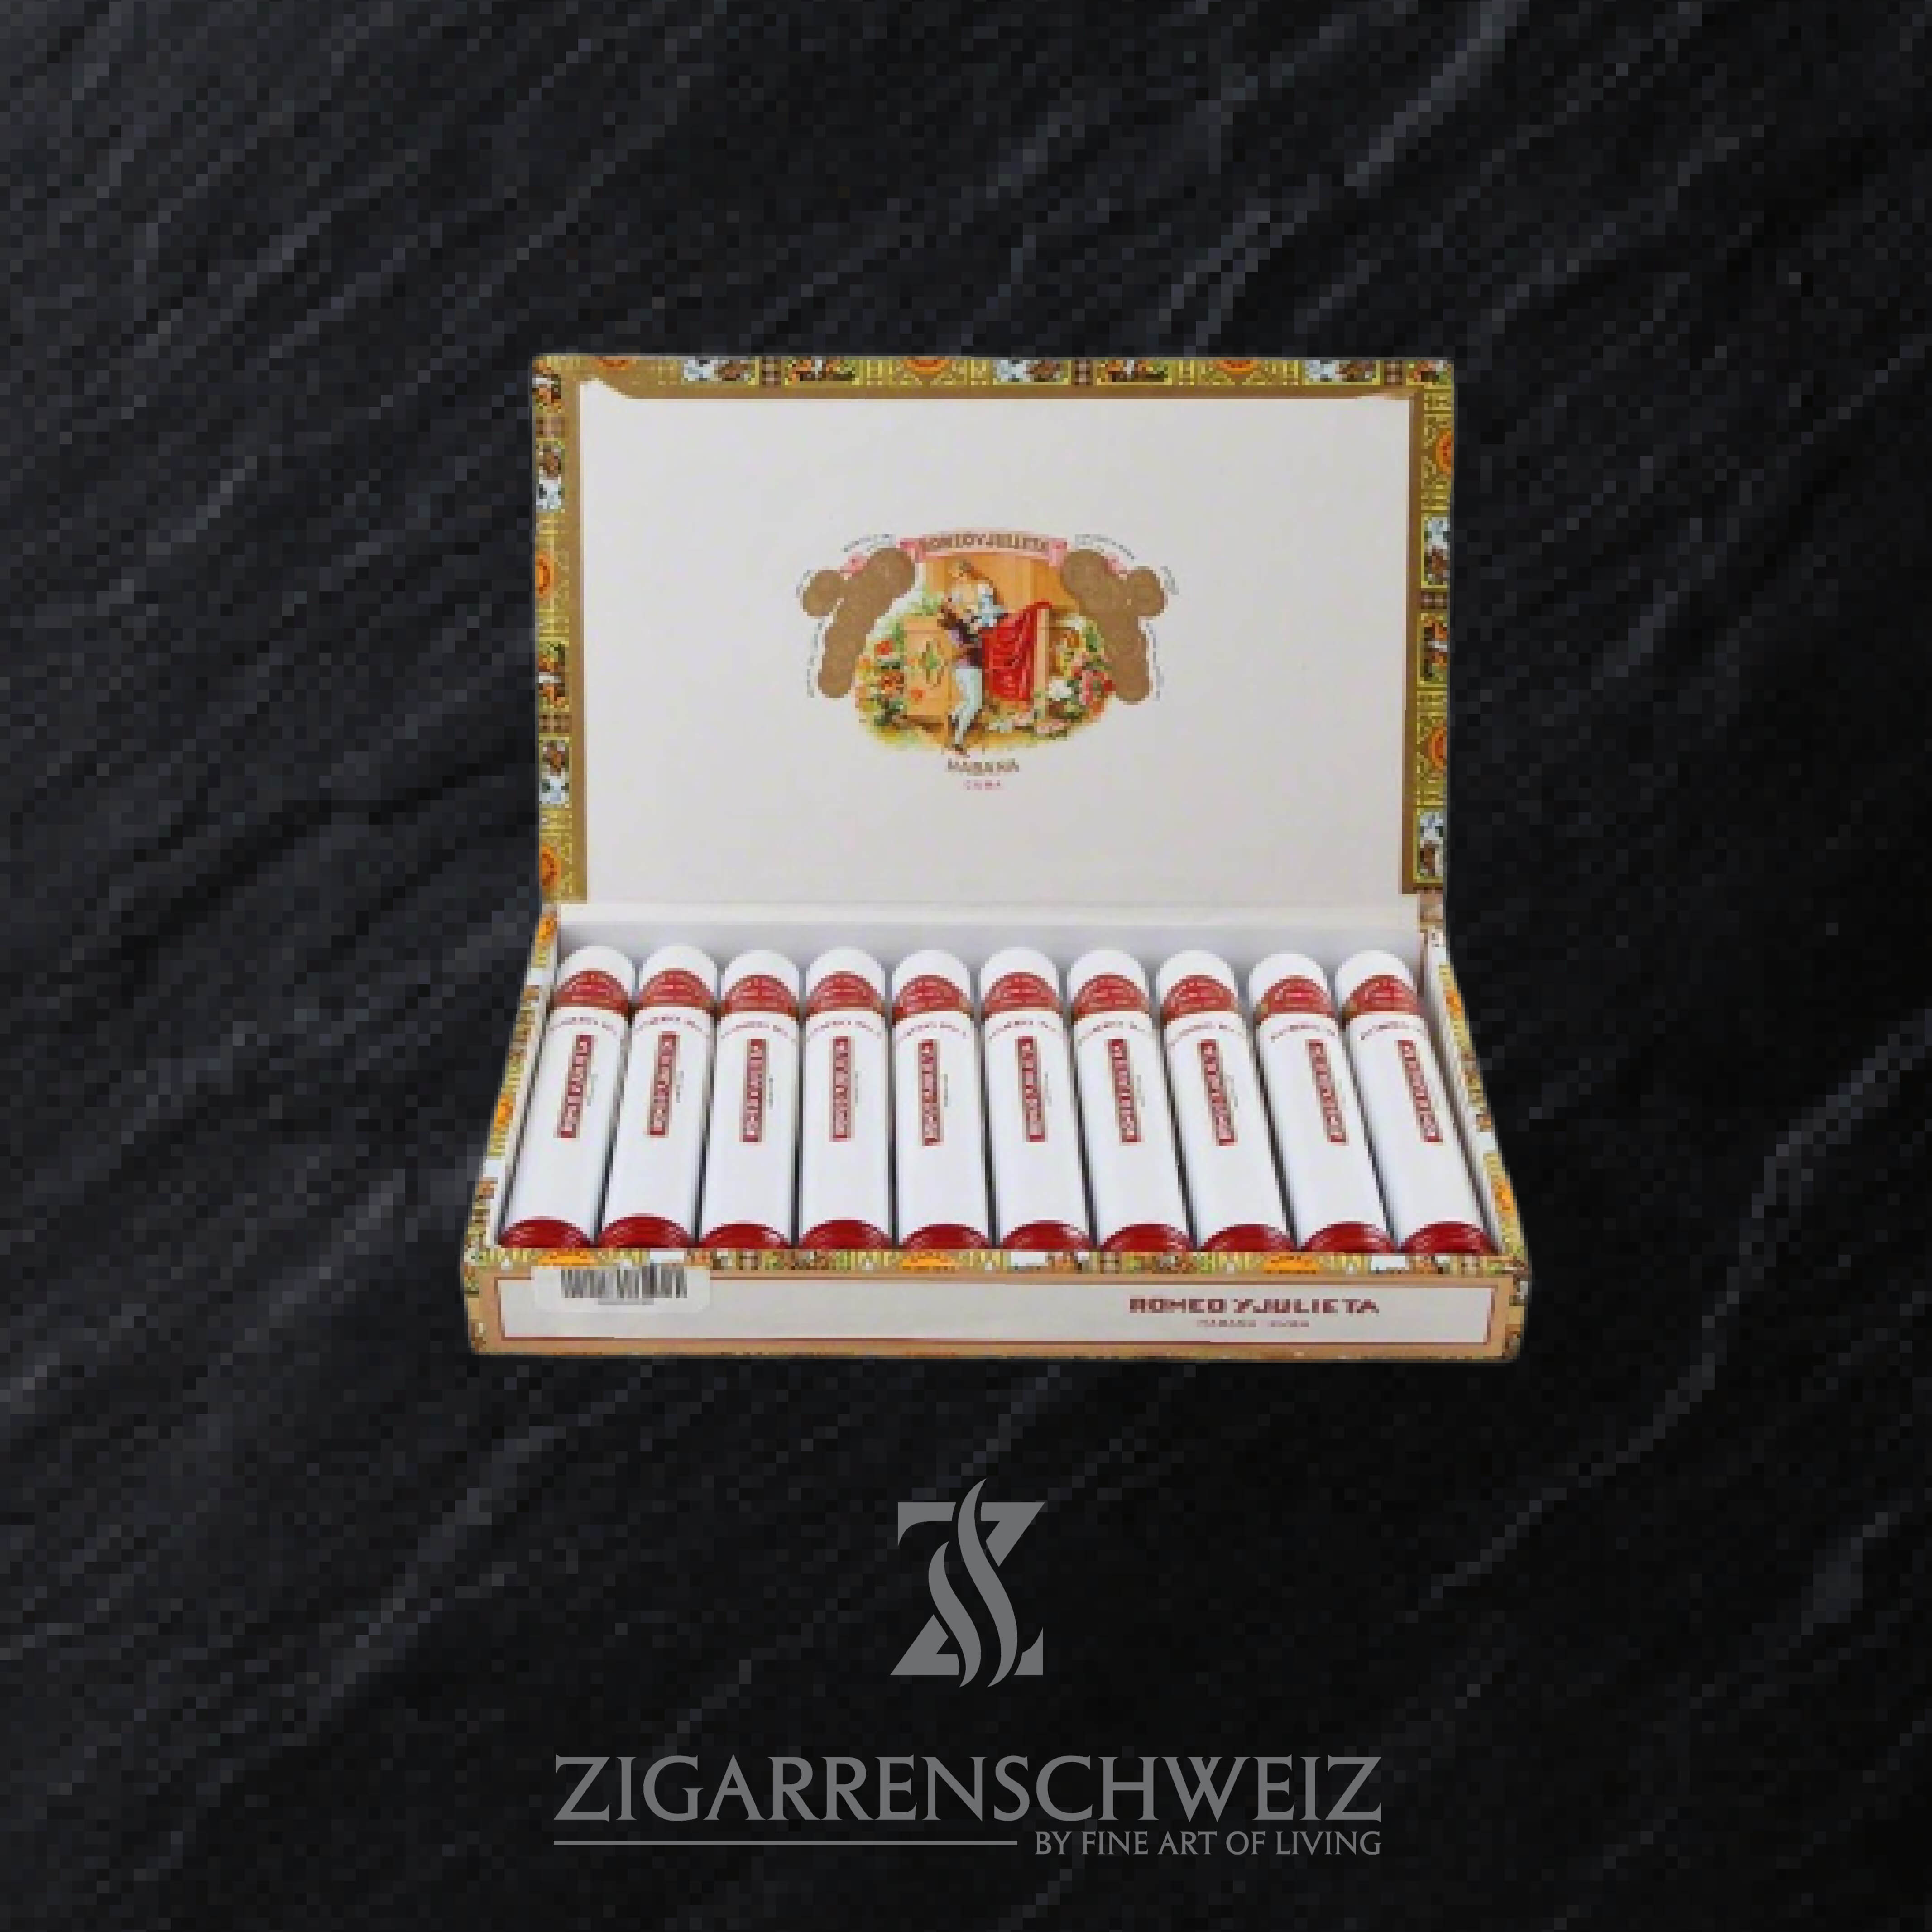 10er Kiste Romeo y Julieta No. 1 Tubo Zigarren aus Kuba